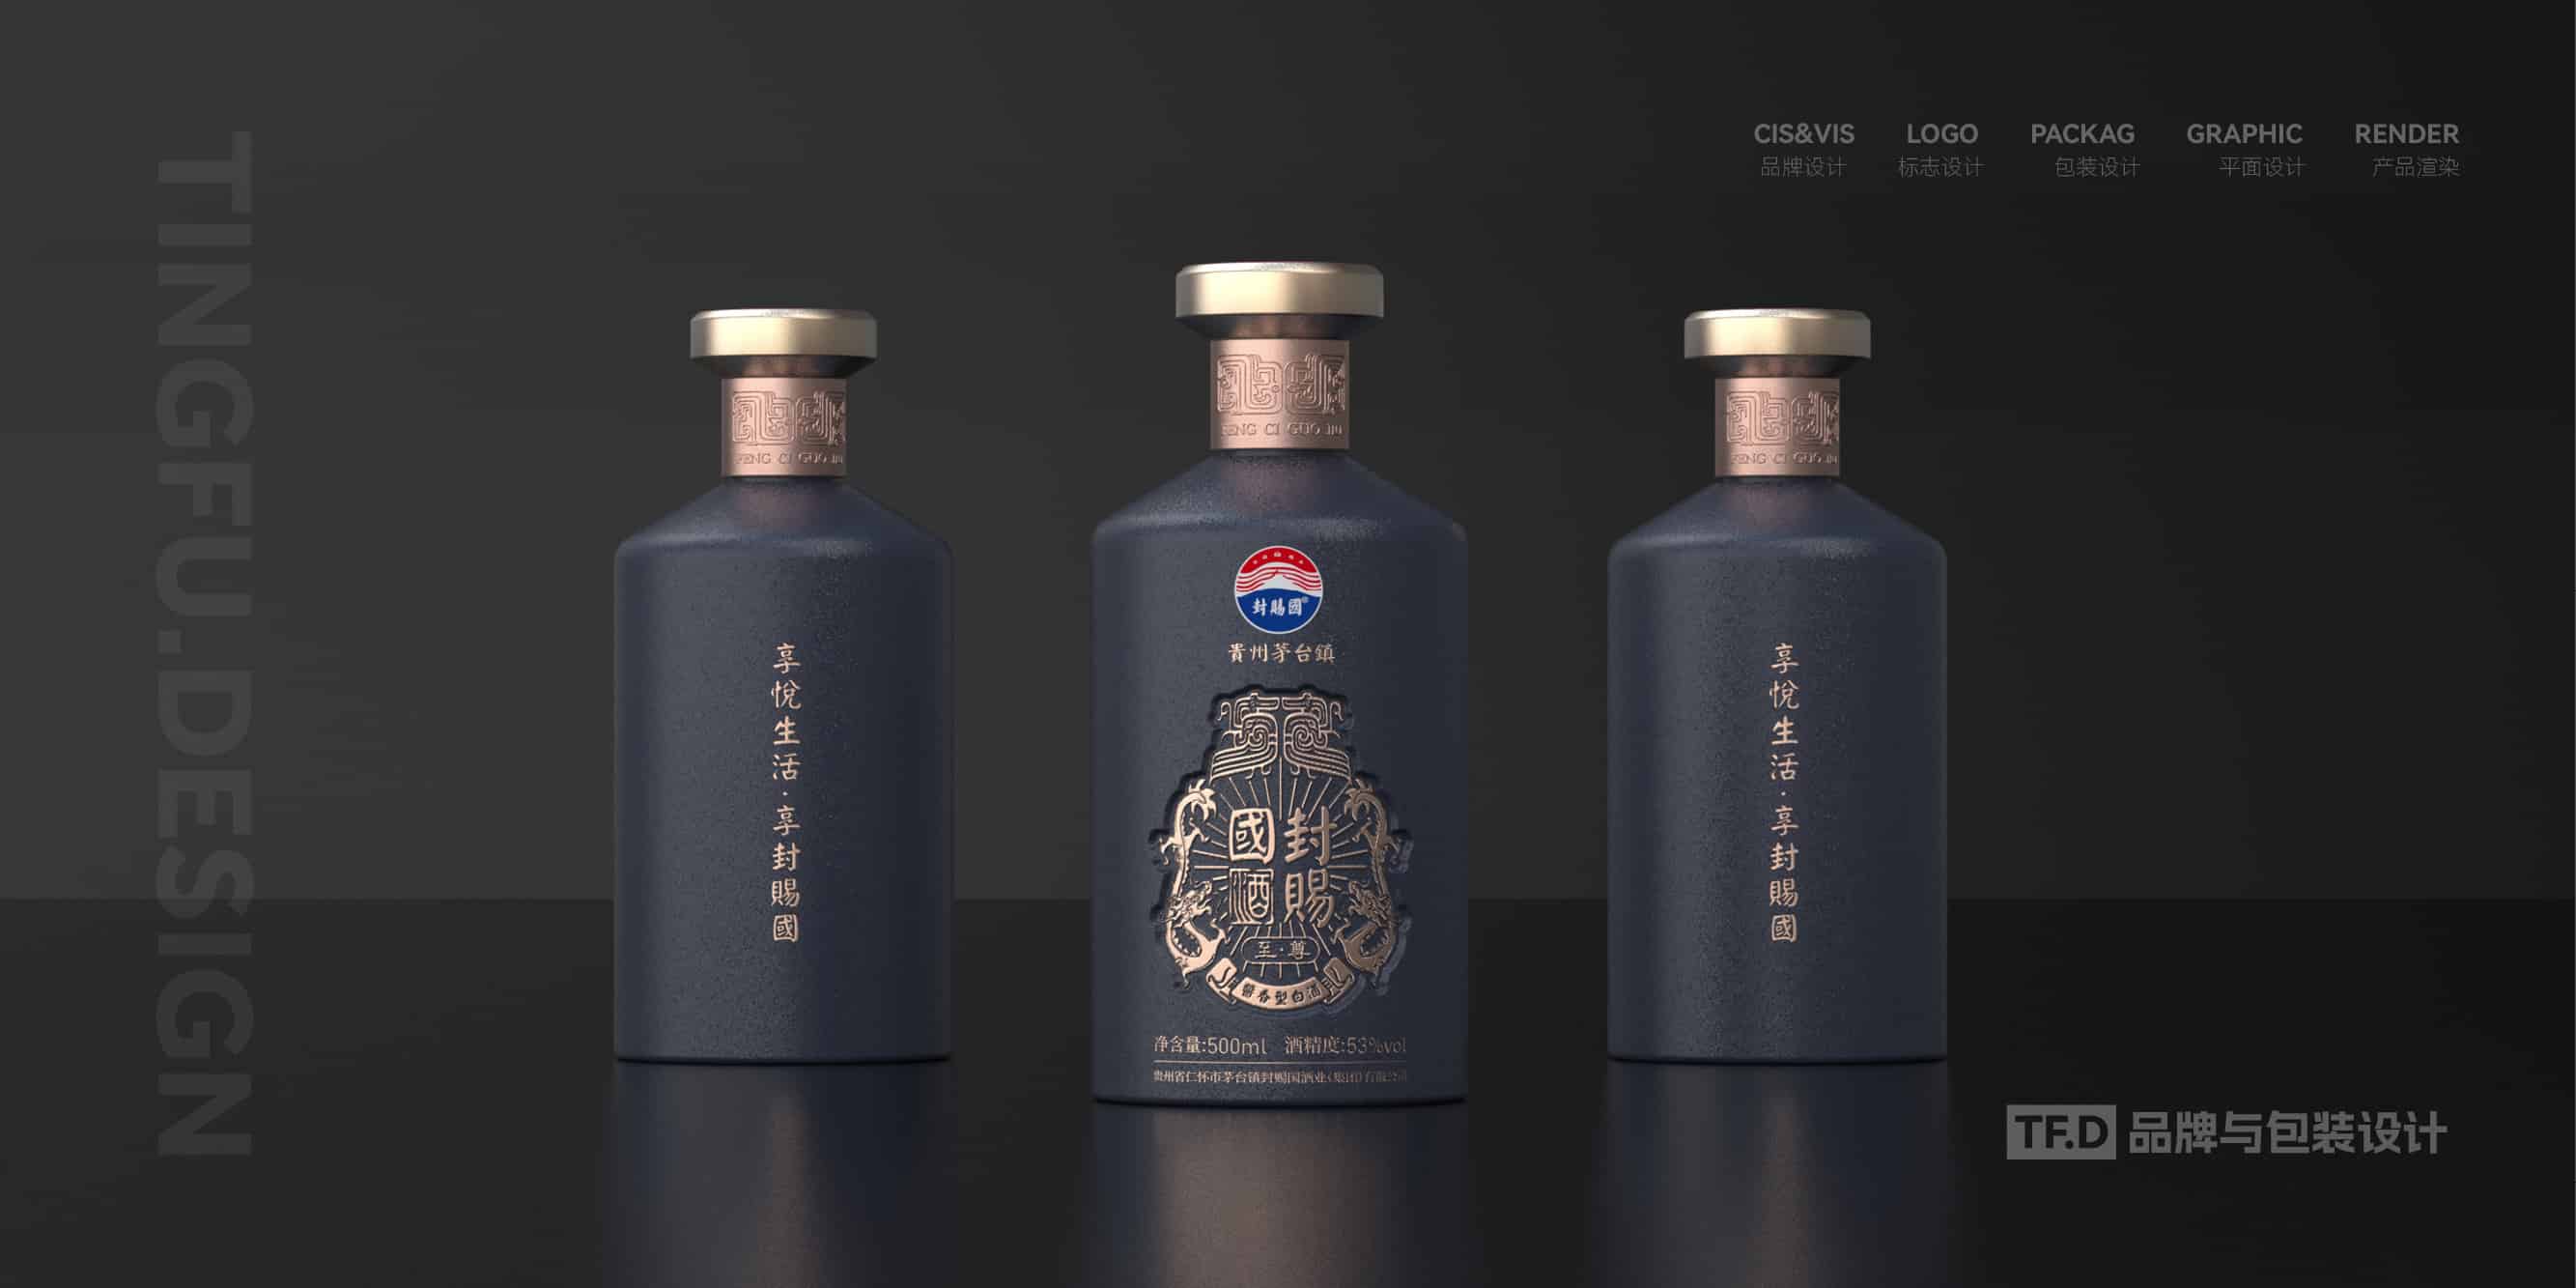 TFD品牌与包装设计-部分酒包装设计案例20-tuya.jpg